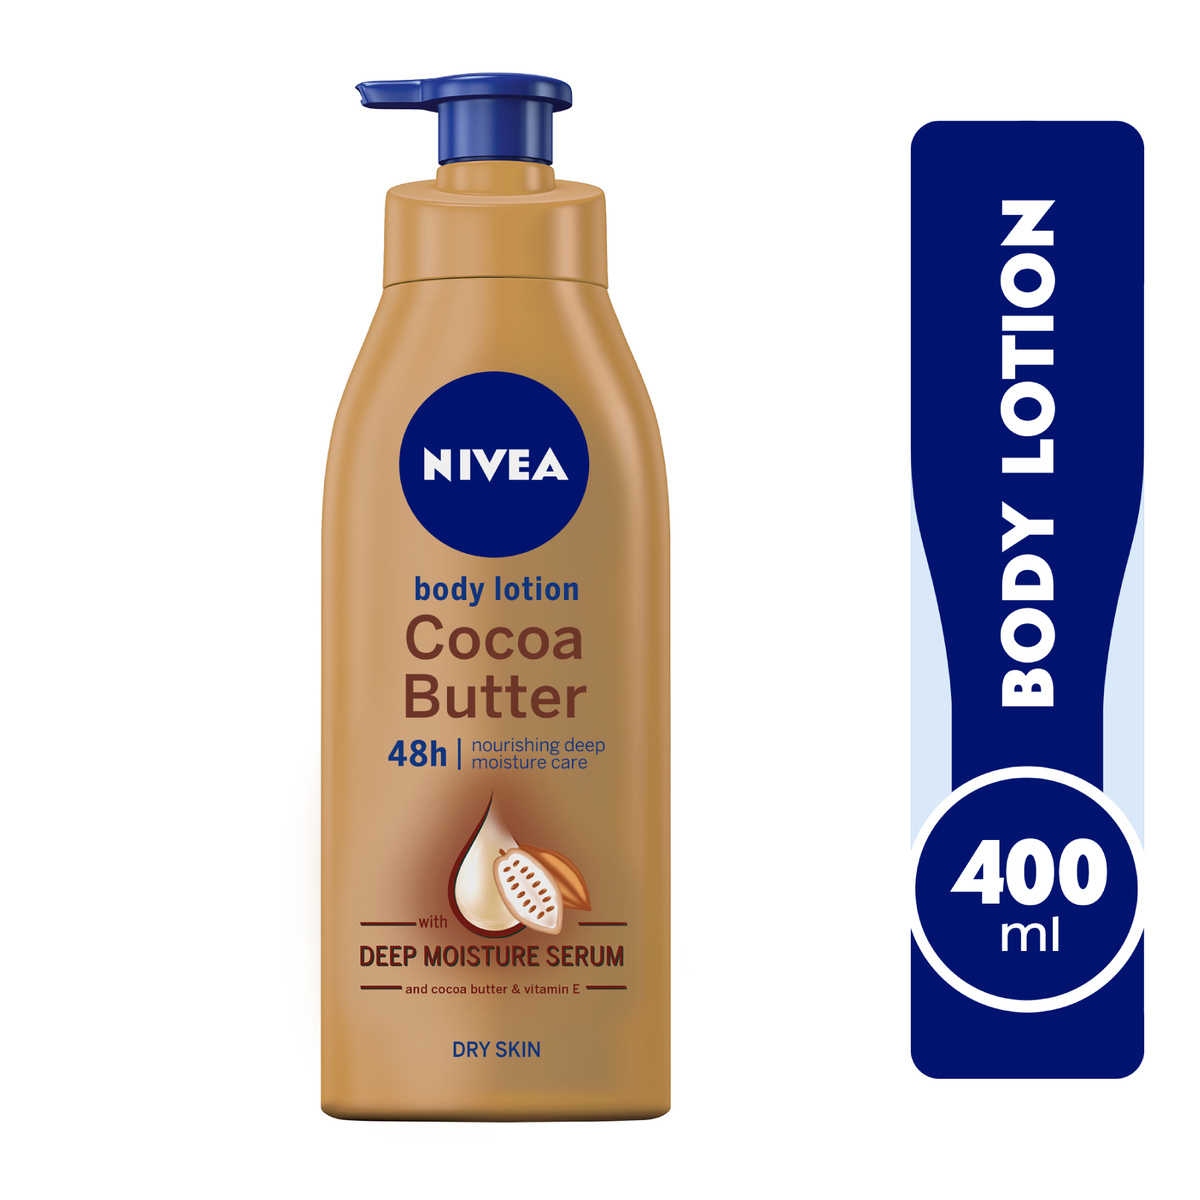 Nivea Body Lotion, Cocoa Butter Vitamin E, Dry Skin, Value Pack 2 x 400 ml